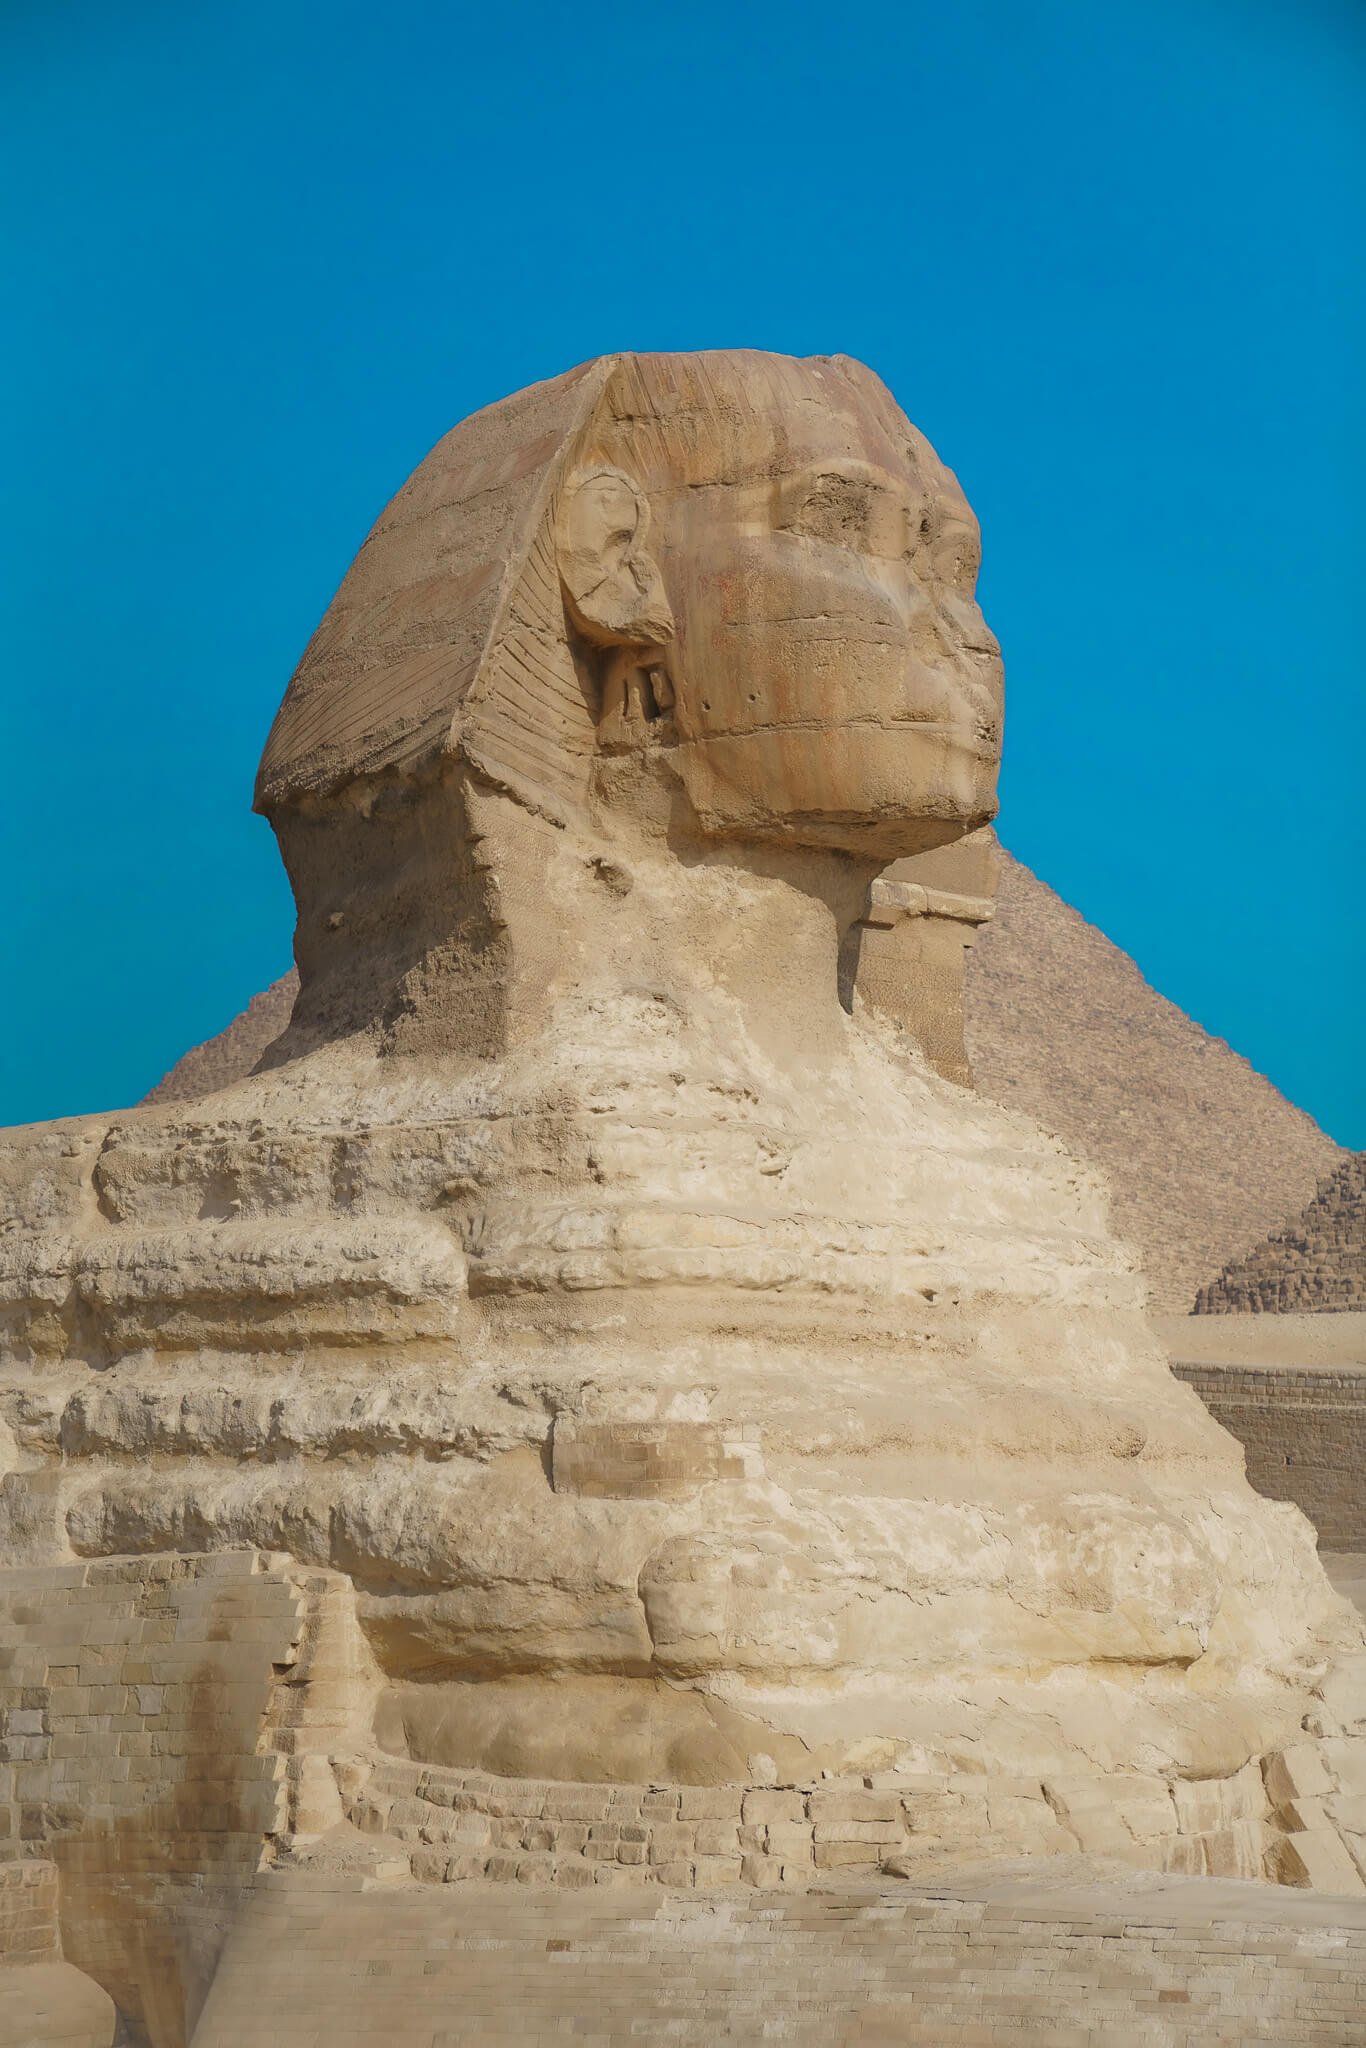 Sphinx, pyramids of Giza in Egypt